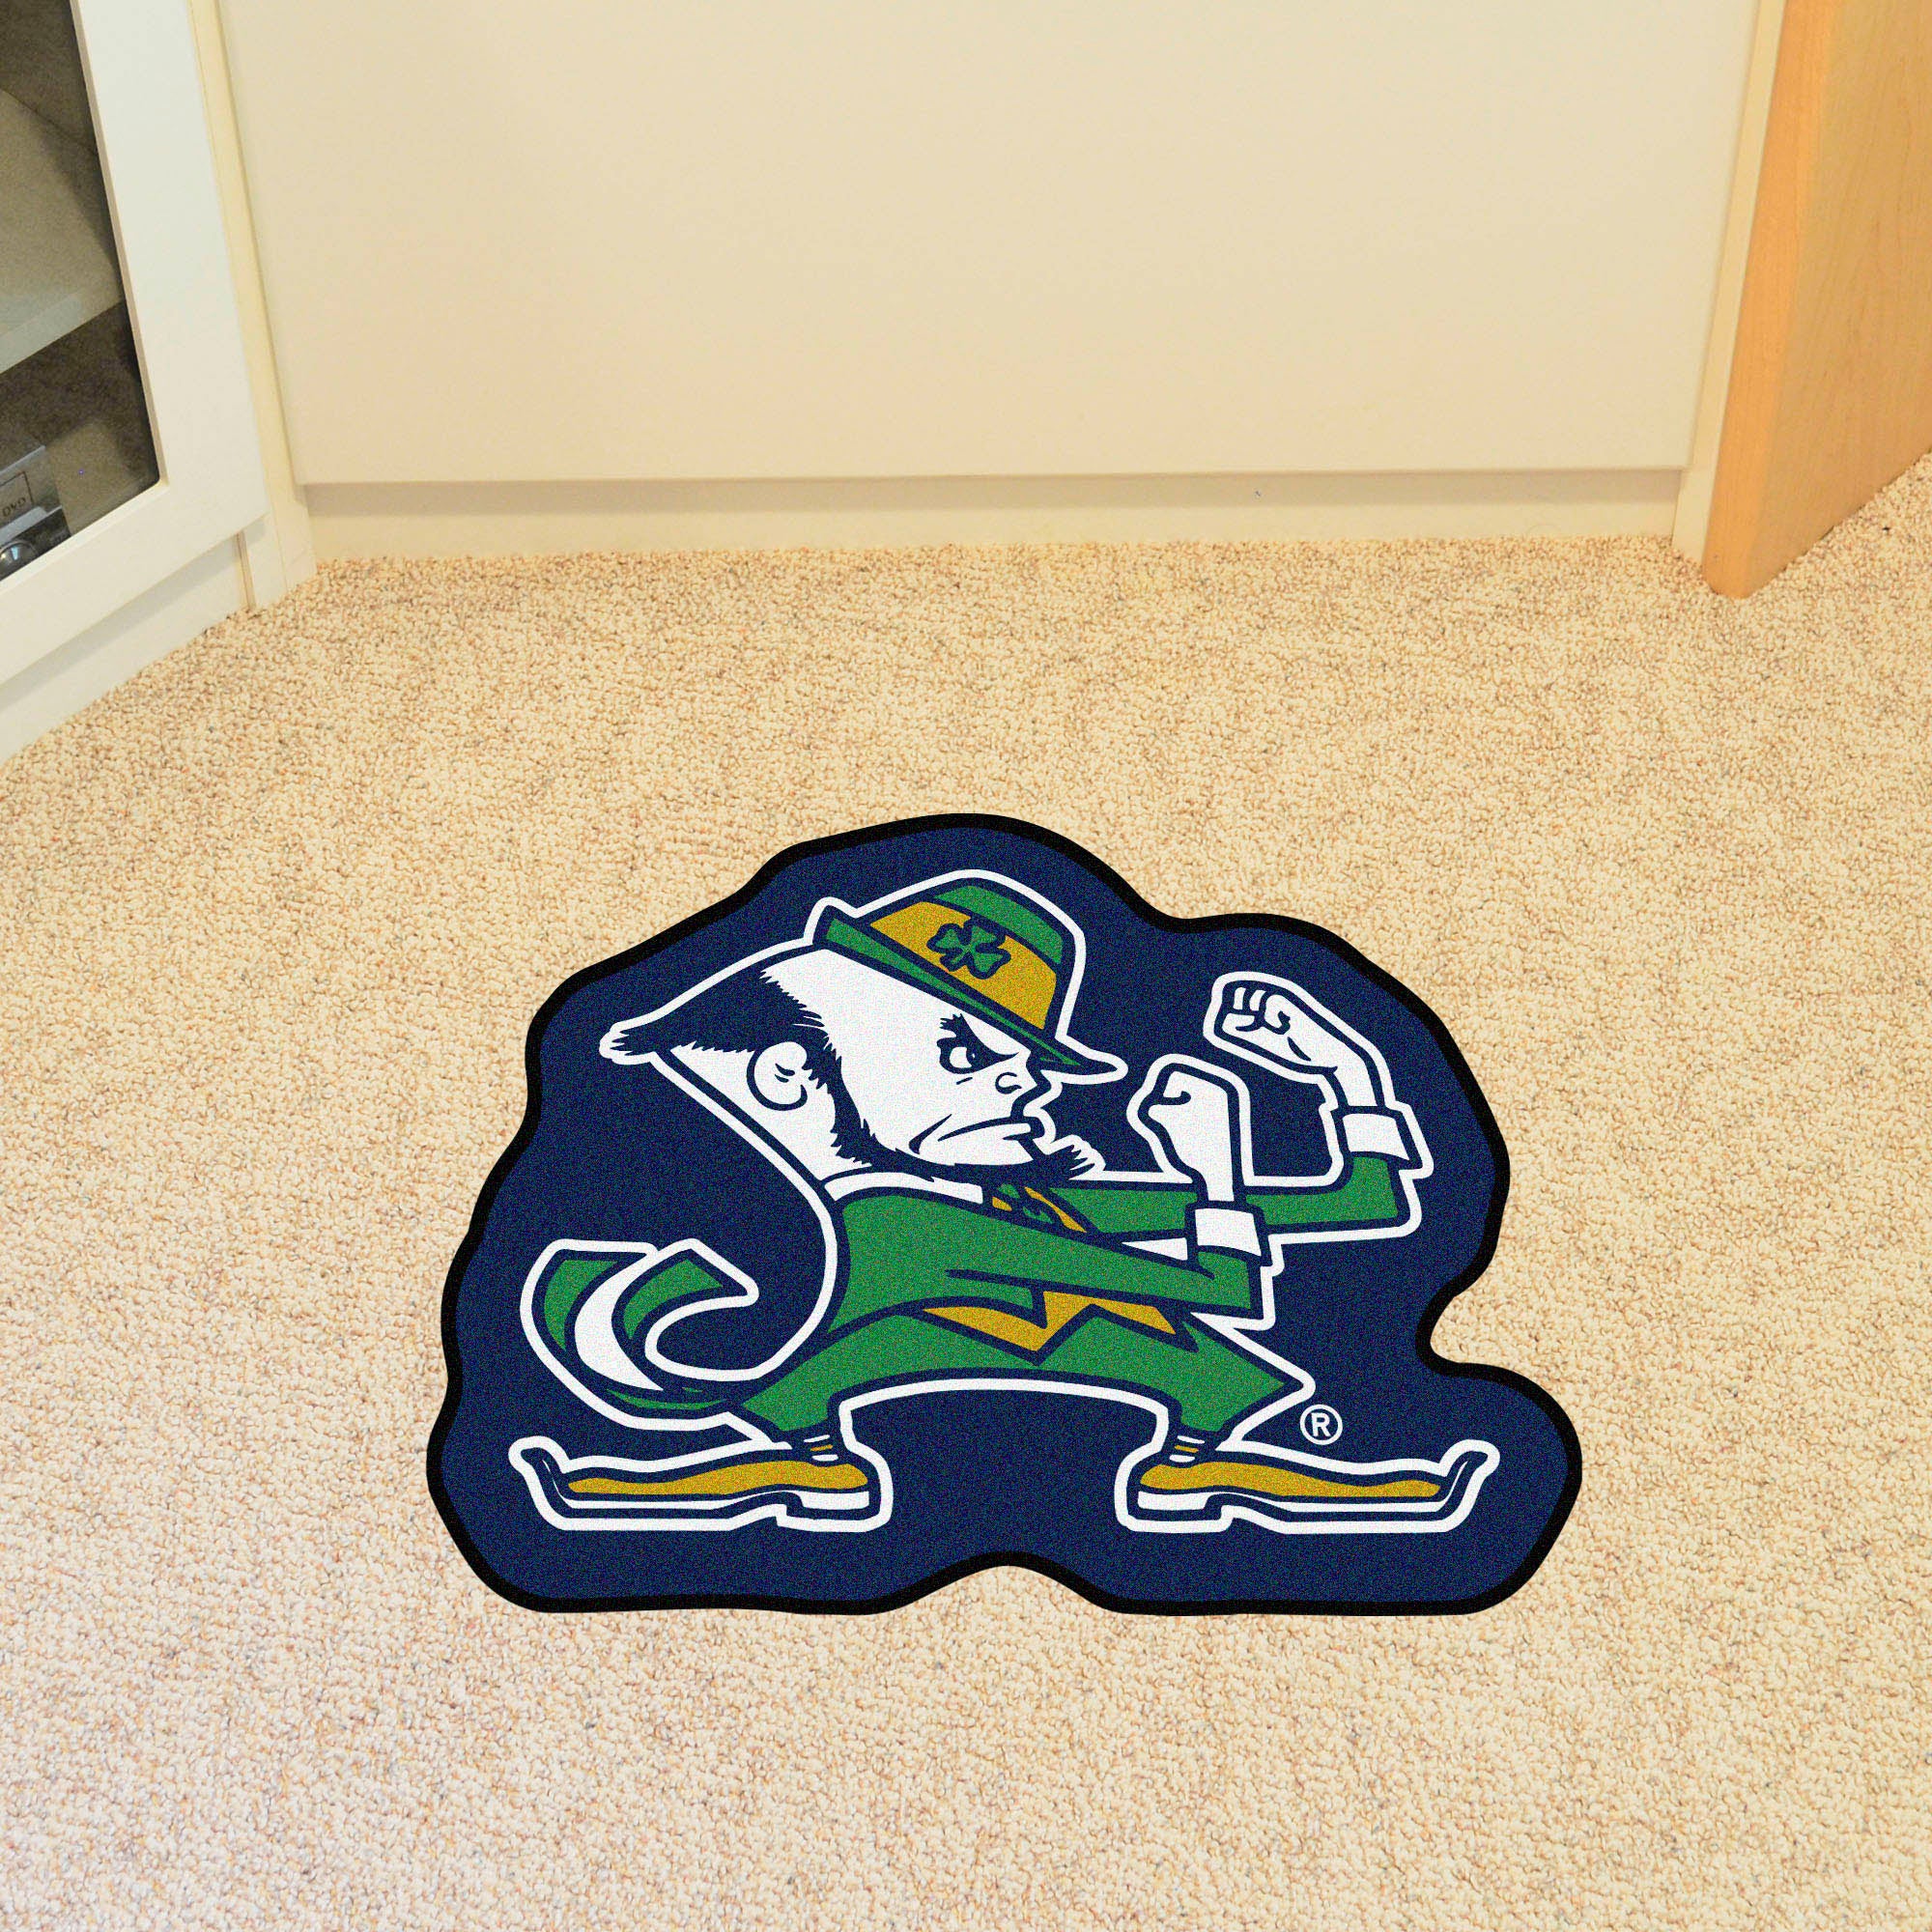 Notre Dame "Fighting Irish" Logo Mascot Mat